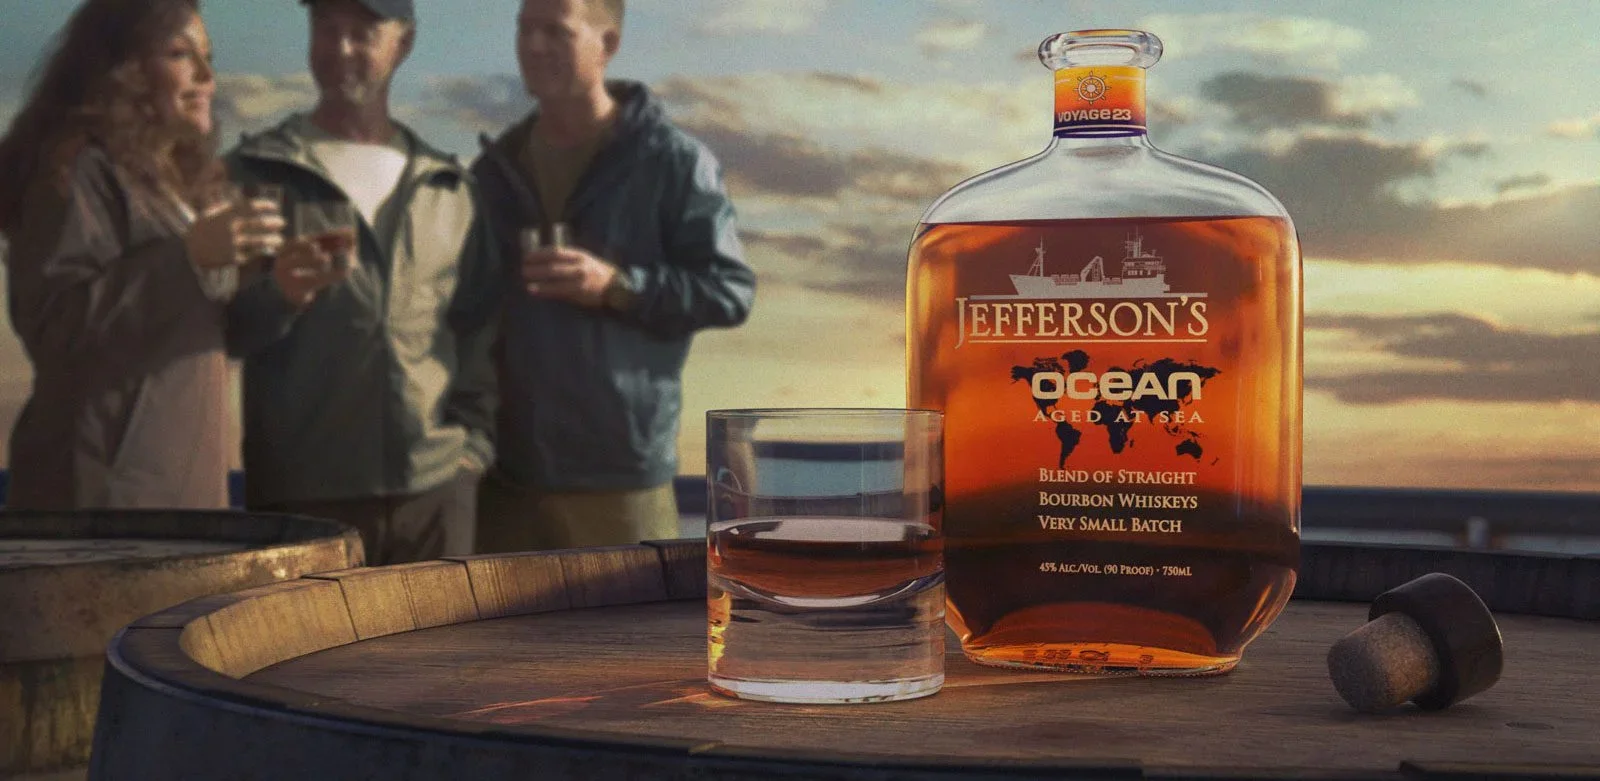 Jefferson's Ocean Bourbon Bottle